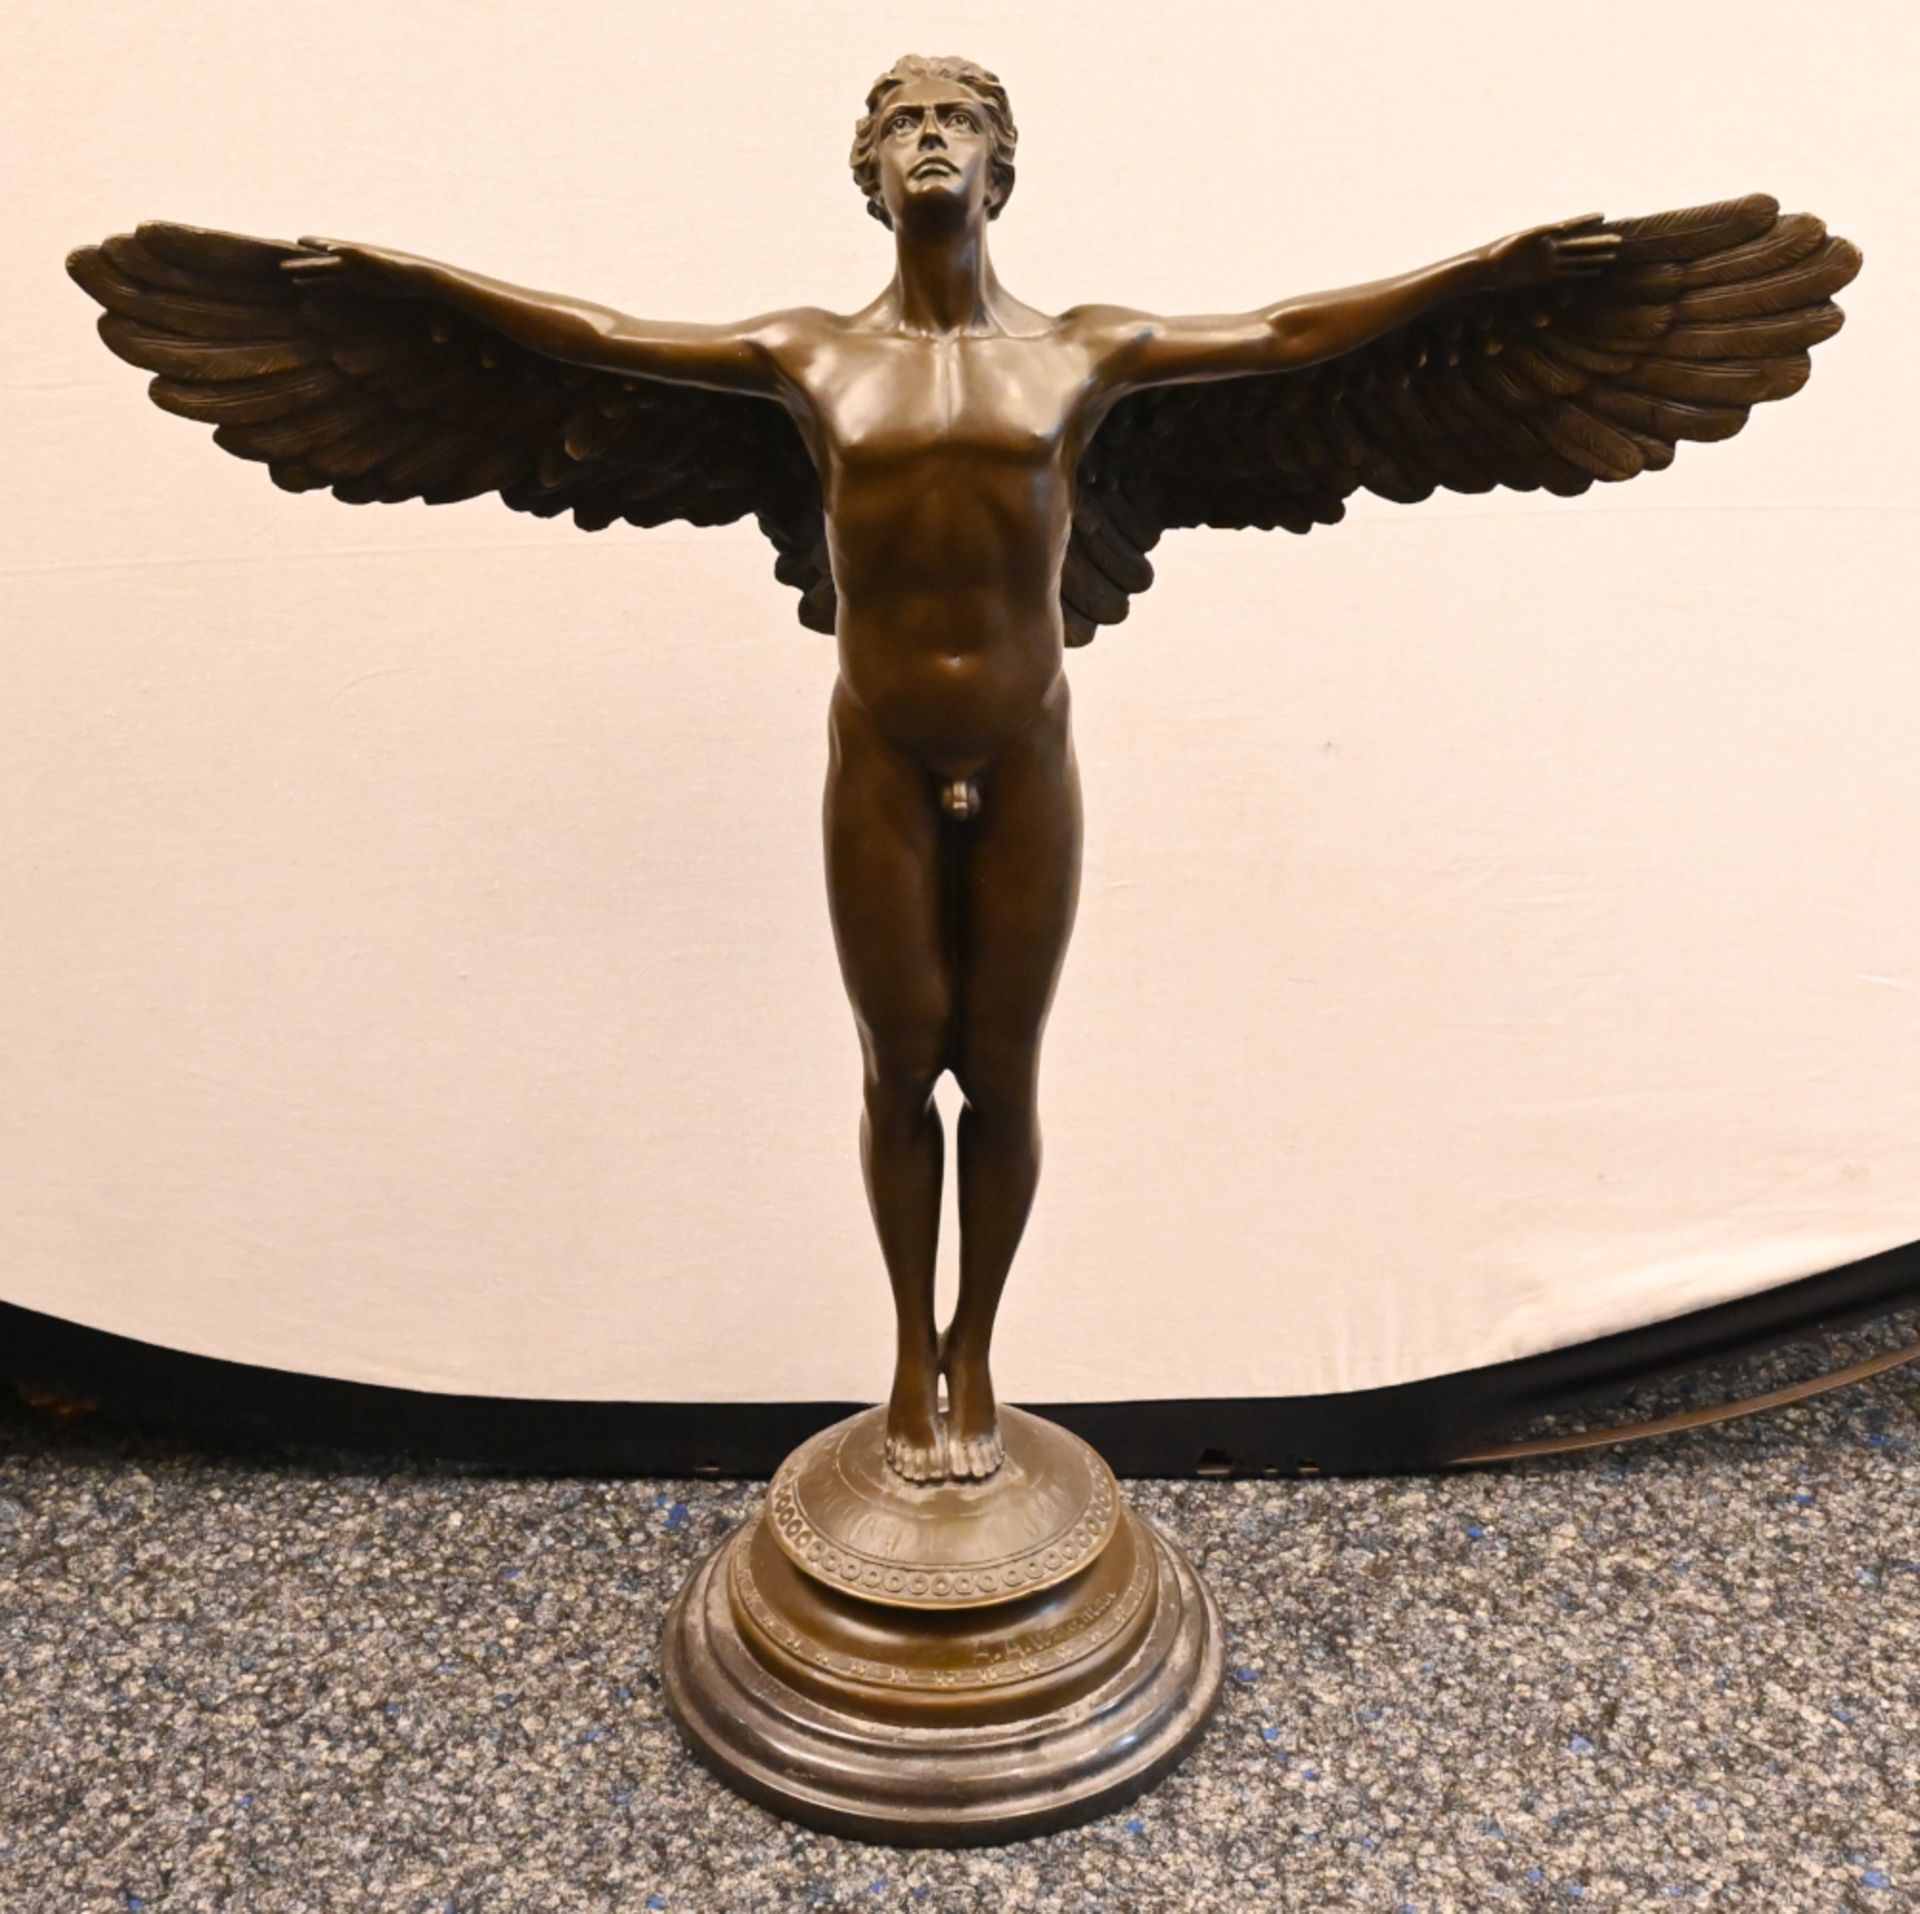 1Statue Bronze "Ikarus" Replik nach Adolph Alexander Weinman, H ca. 60cm auf rundem Marmorsockel,